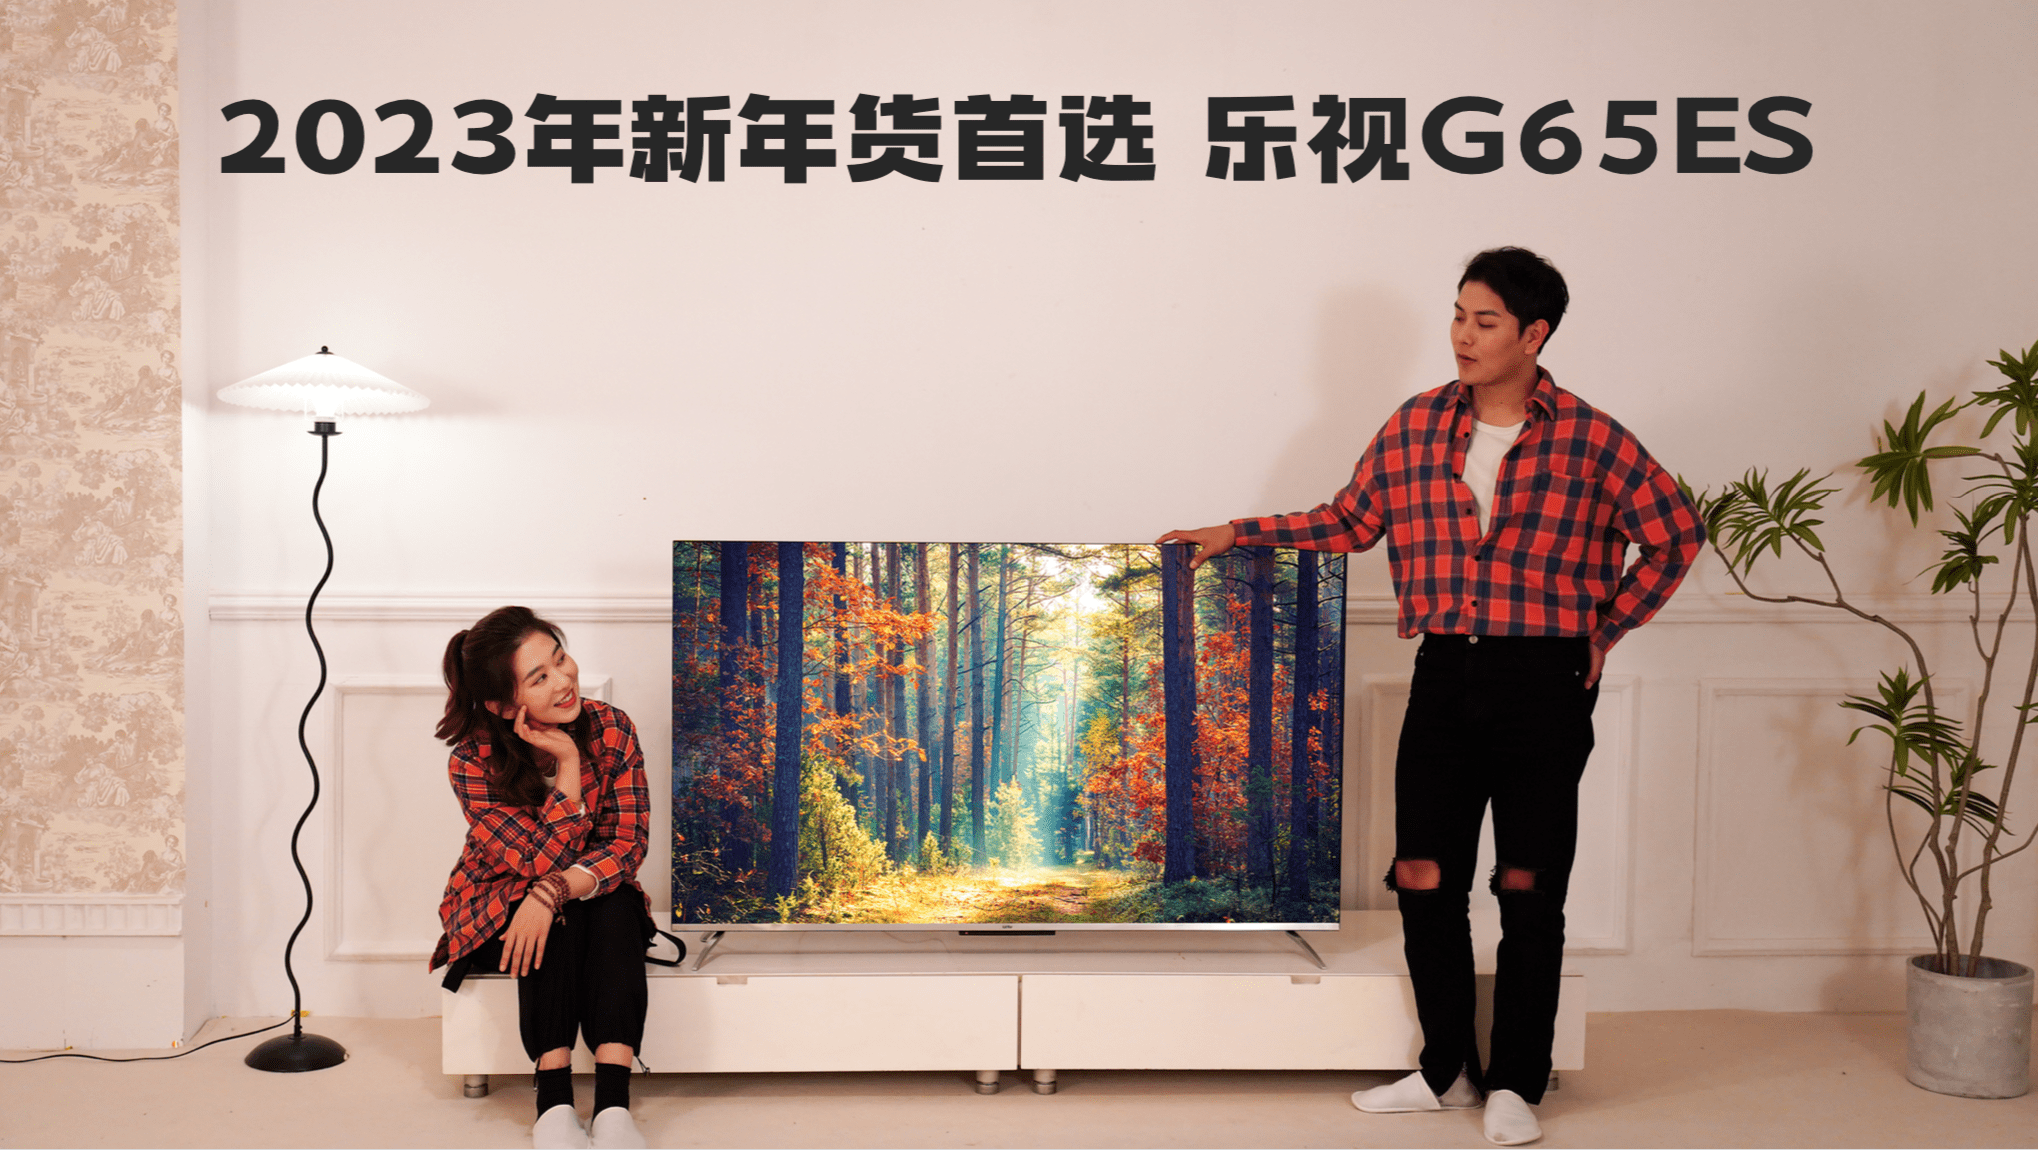 乐视推G65ES新品 剑指2023年65吋智能电视爆款-最极客